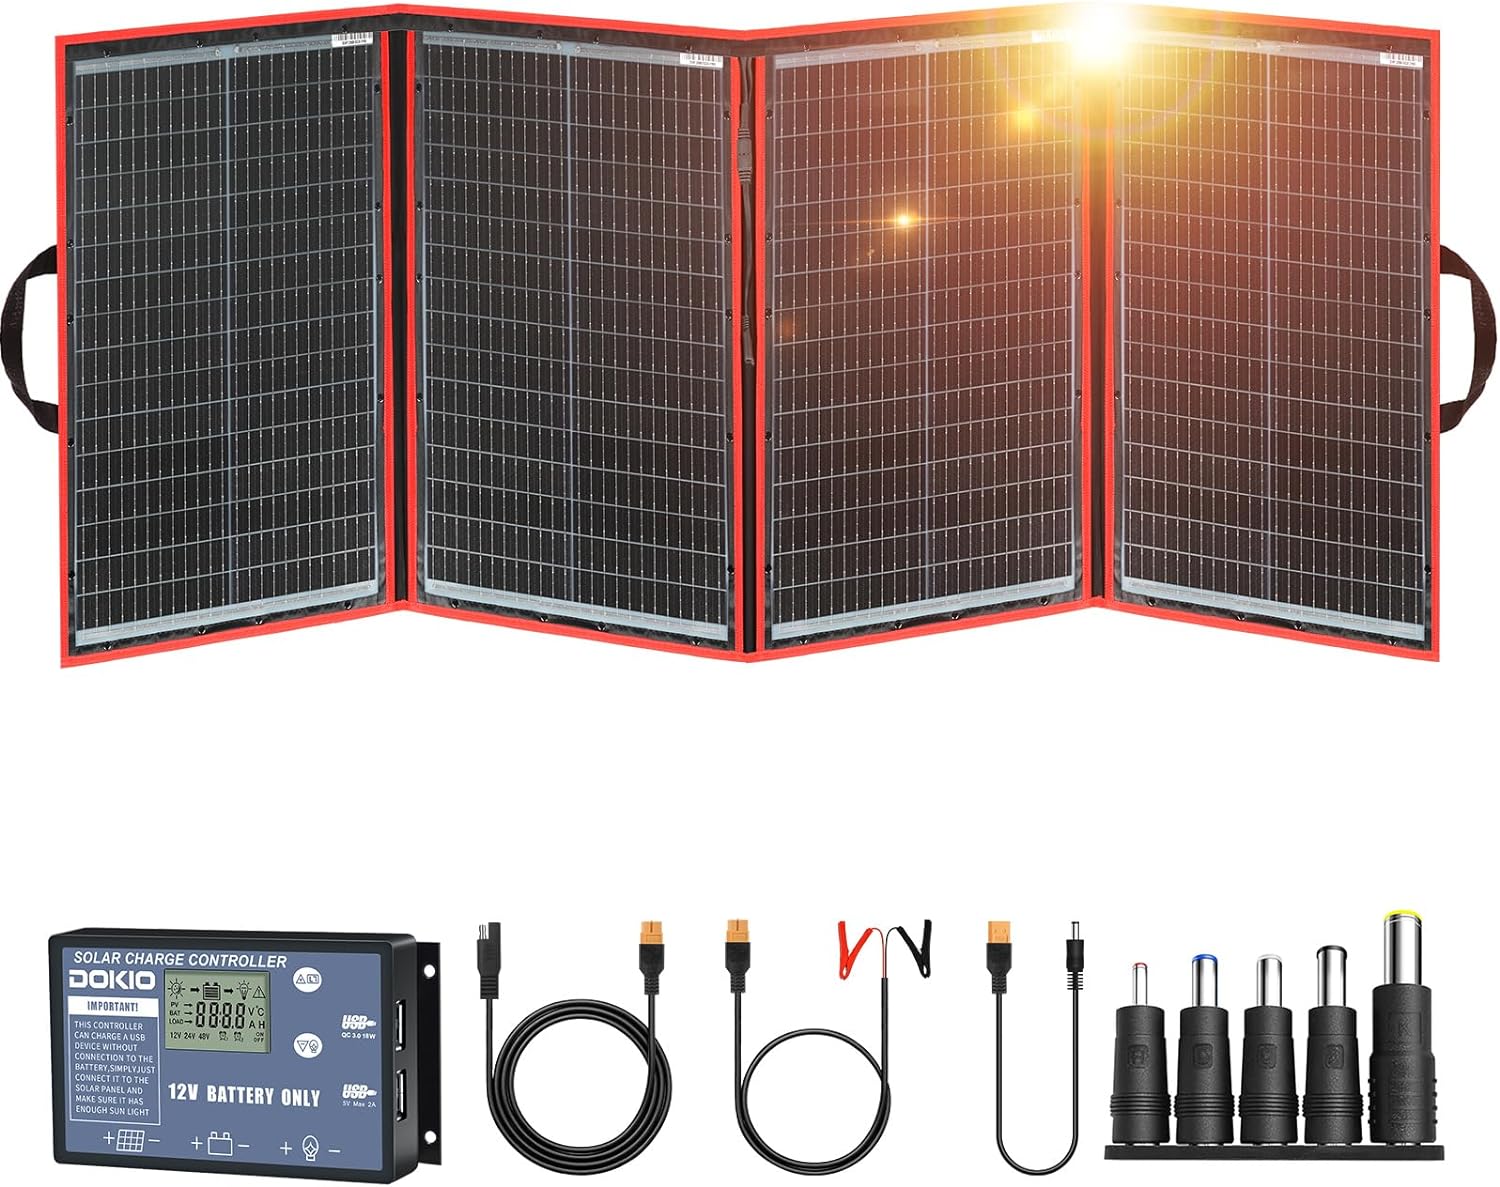 DOKIO Solar Panel Kit Review